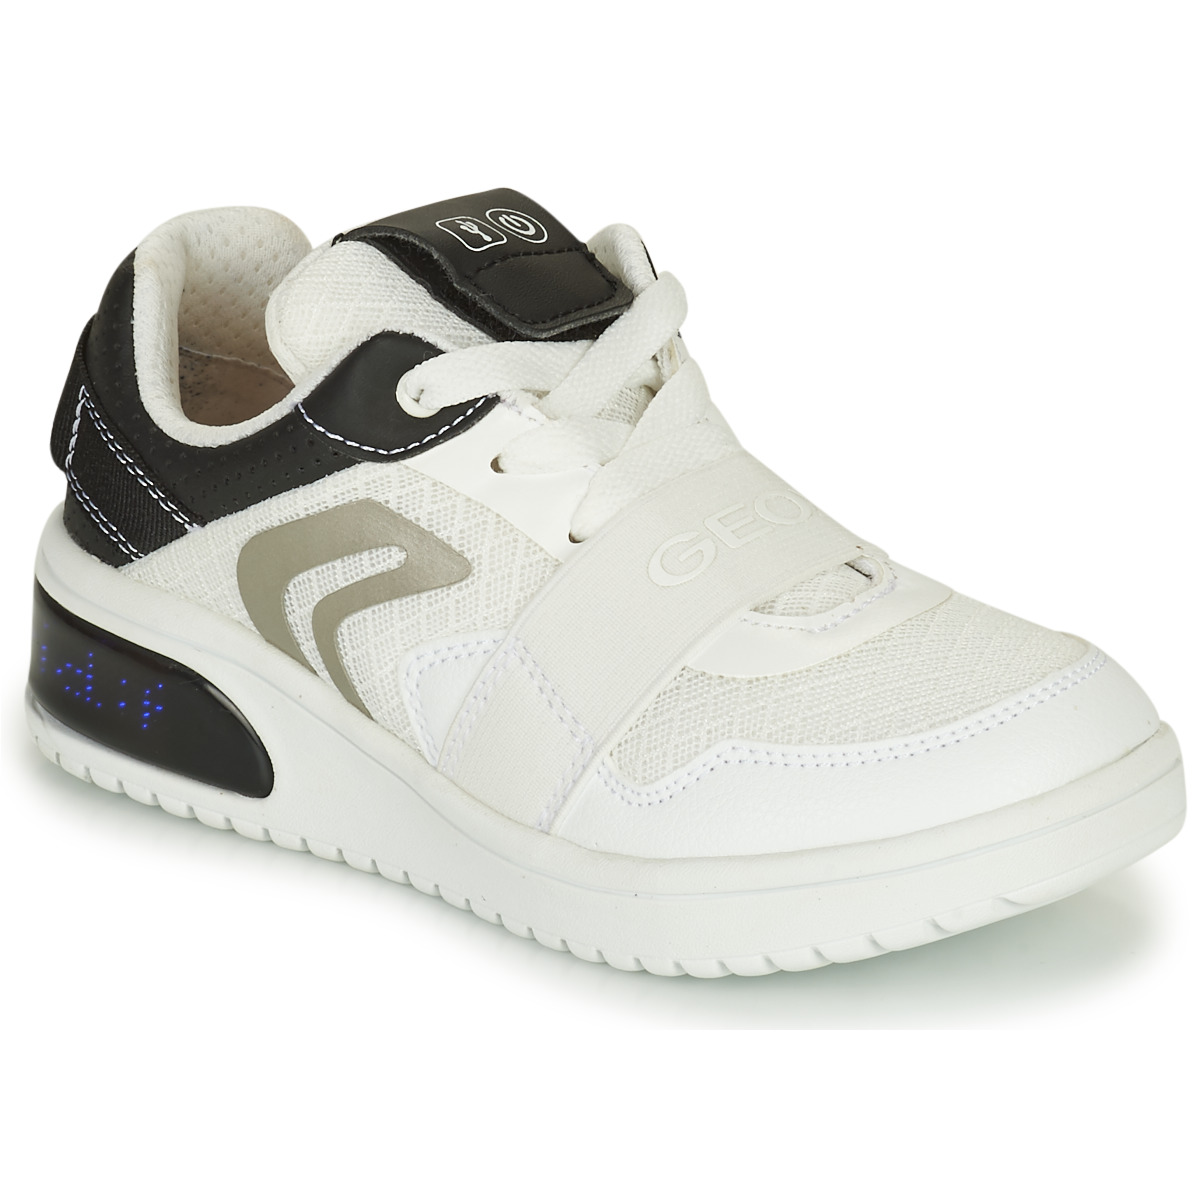 Sapatos Rapaz Sapatilhas Geox J XLED B. B - MESH+GEOBUCK Branco / Preto